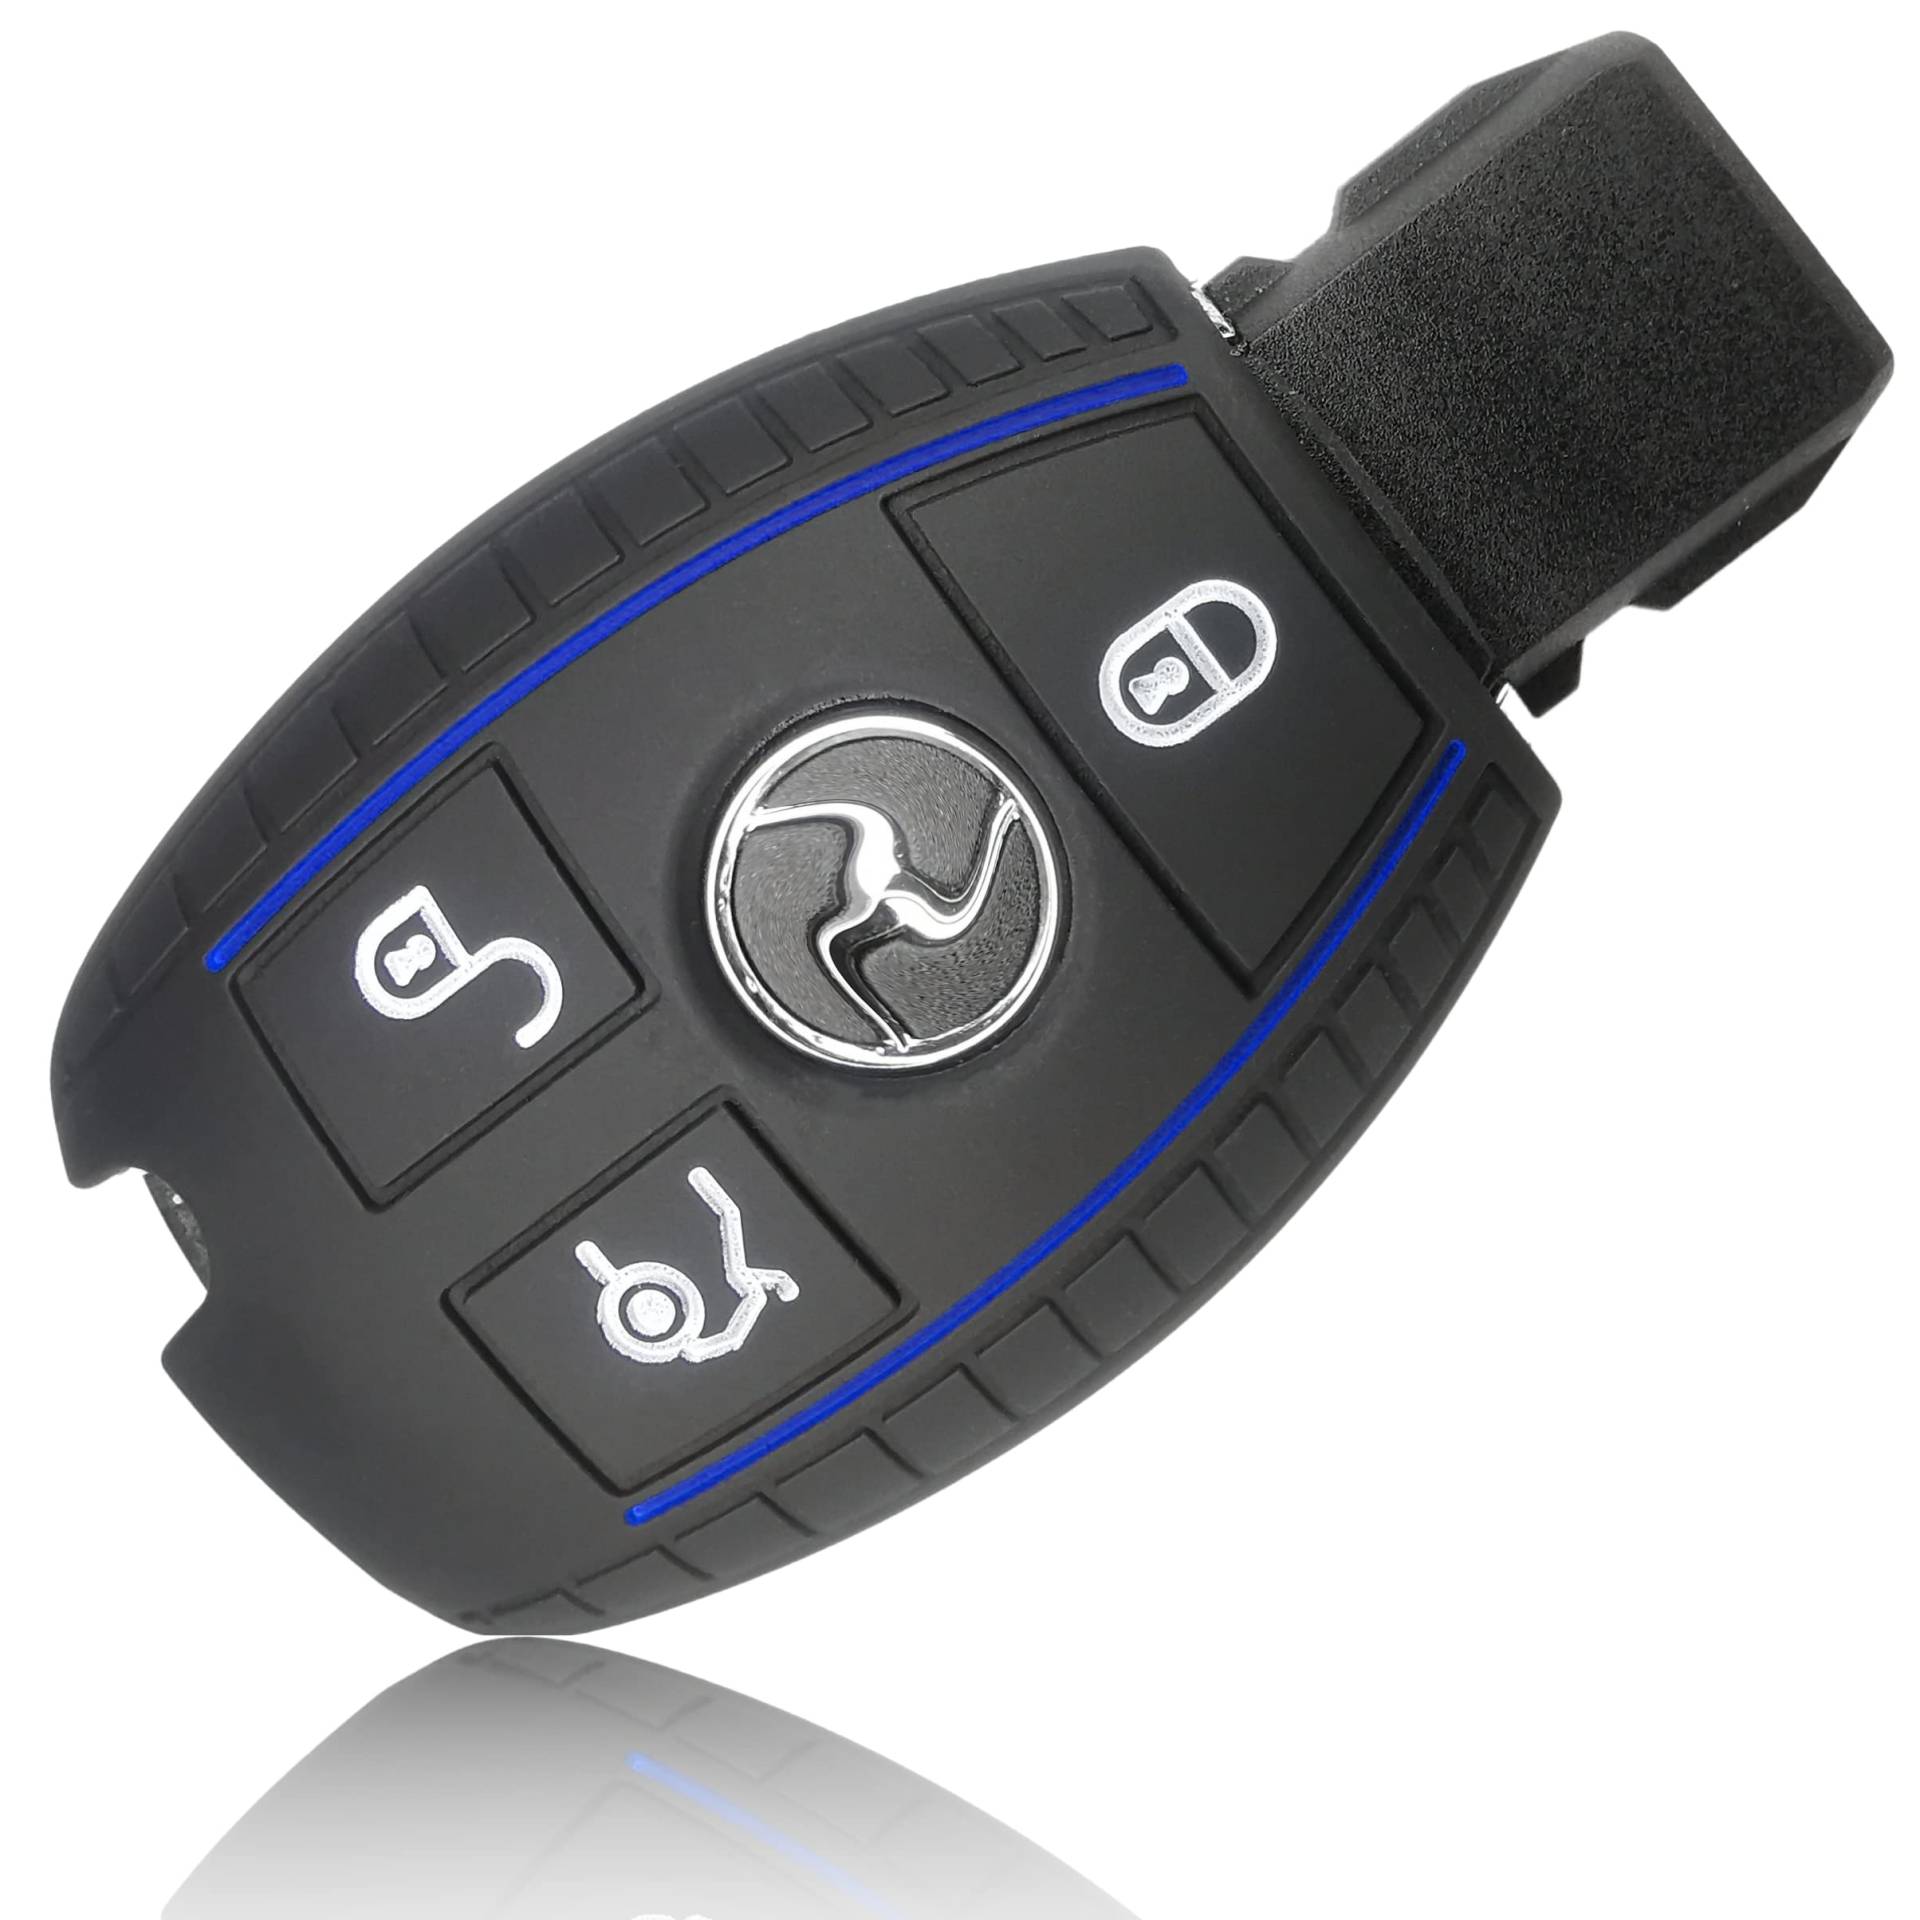 FOAMO Autoschlüssel Hülle kompatibel mit Mercedes Benz 3-Tasten - Silikon Schutzhülle Cover Schlüssel-Hülle in Schwarz-Blau von FOAMO